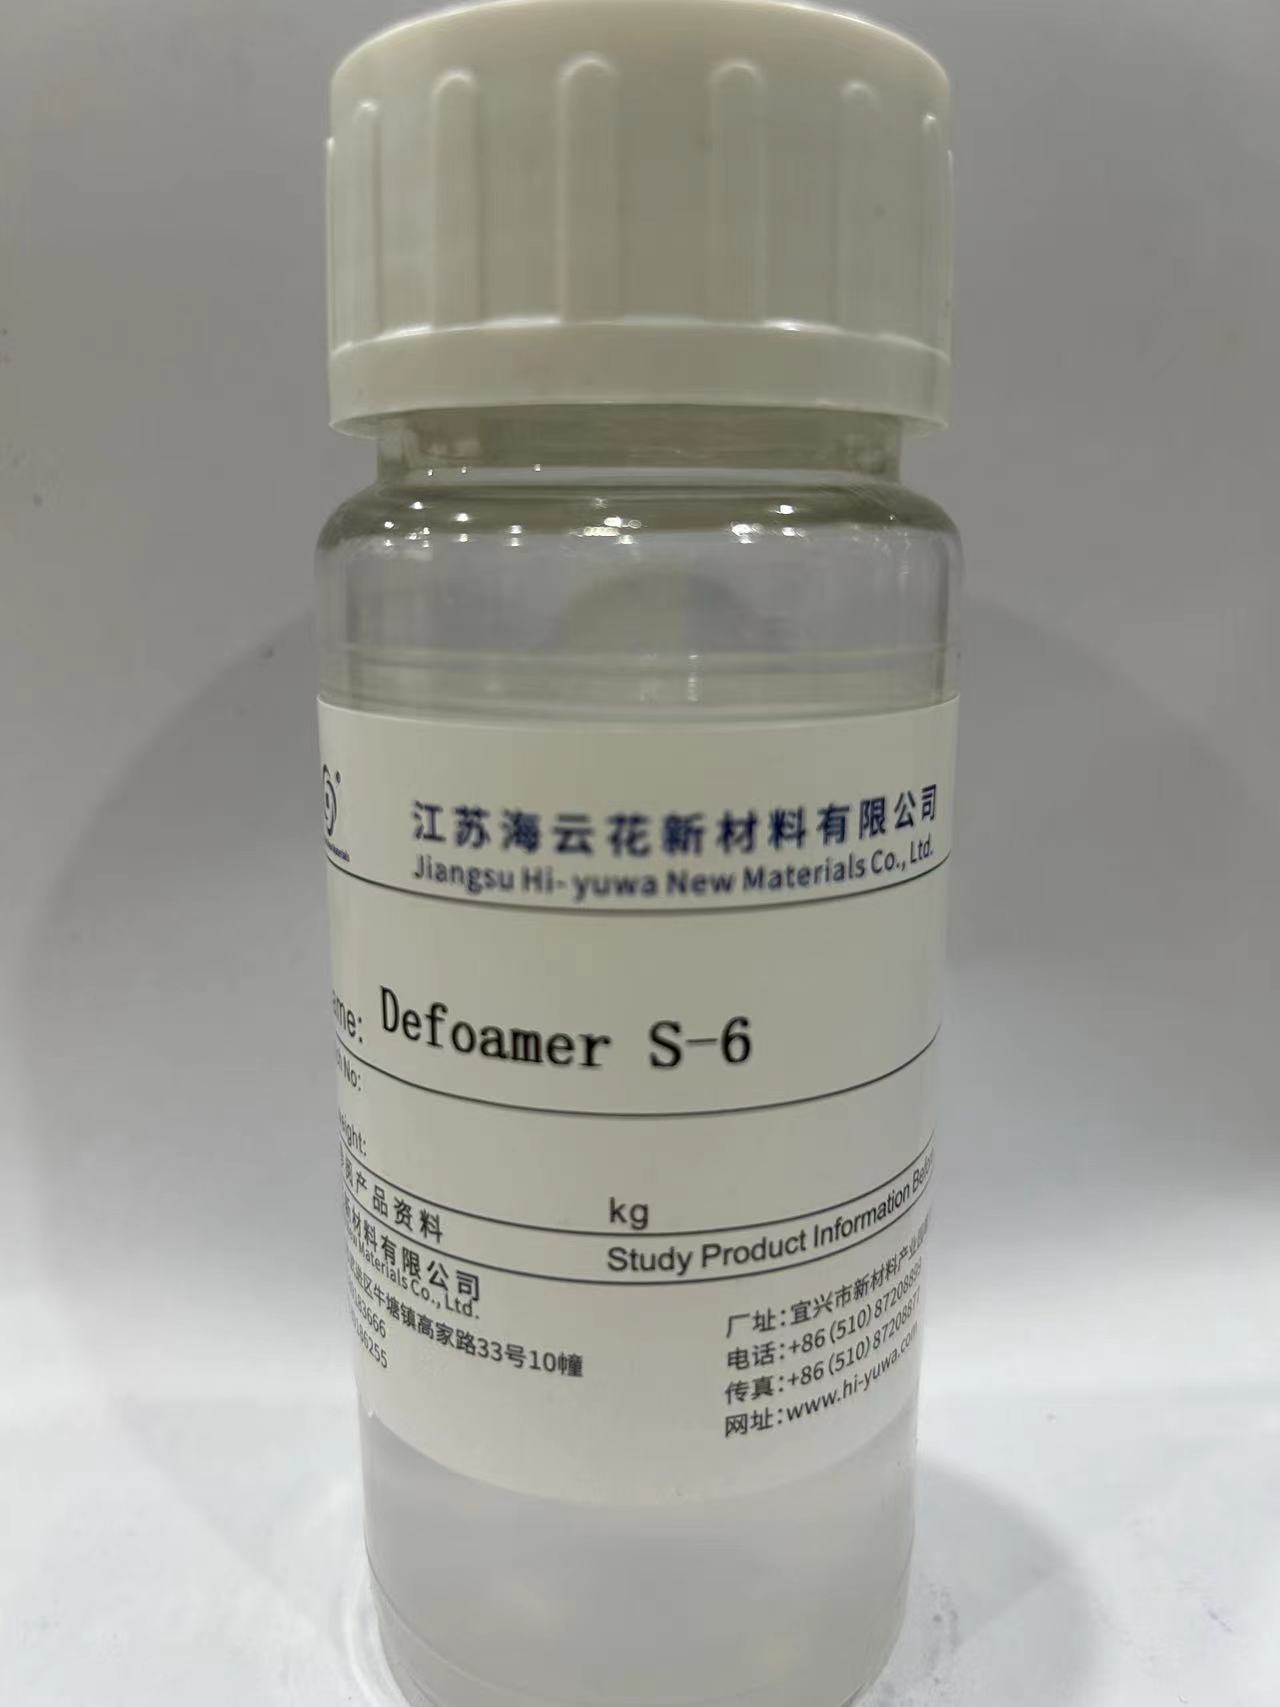 Defoamer S-6